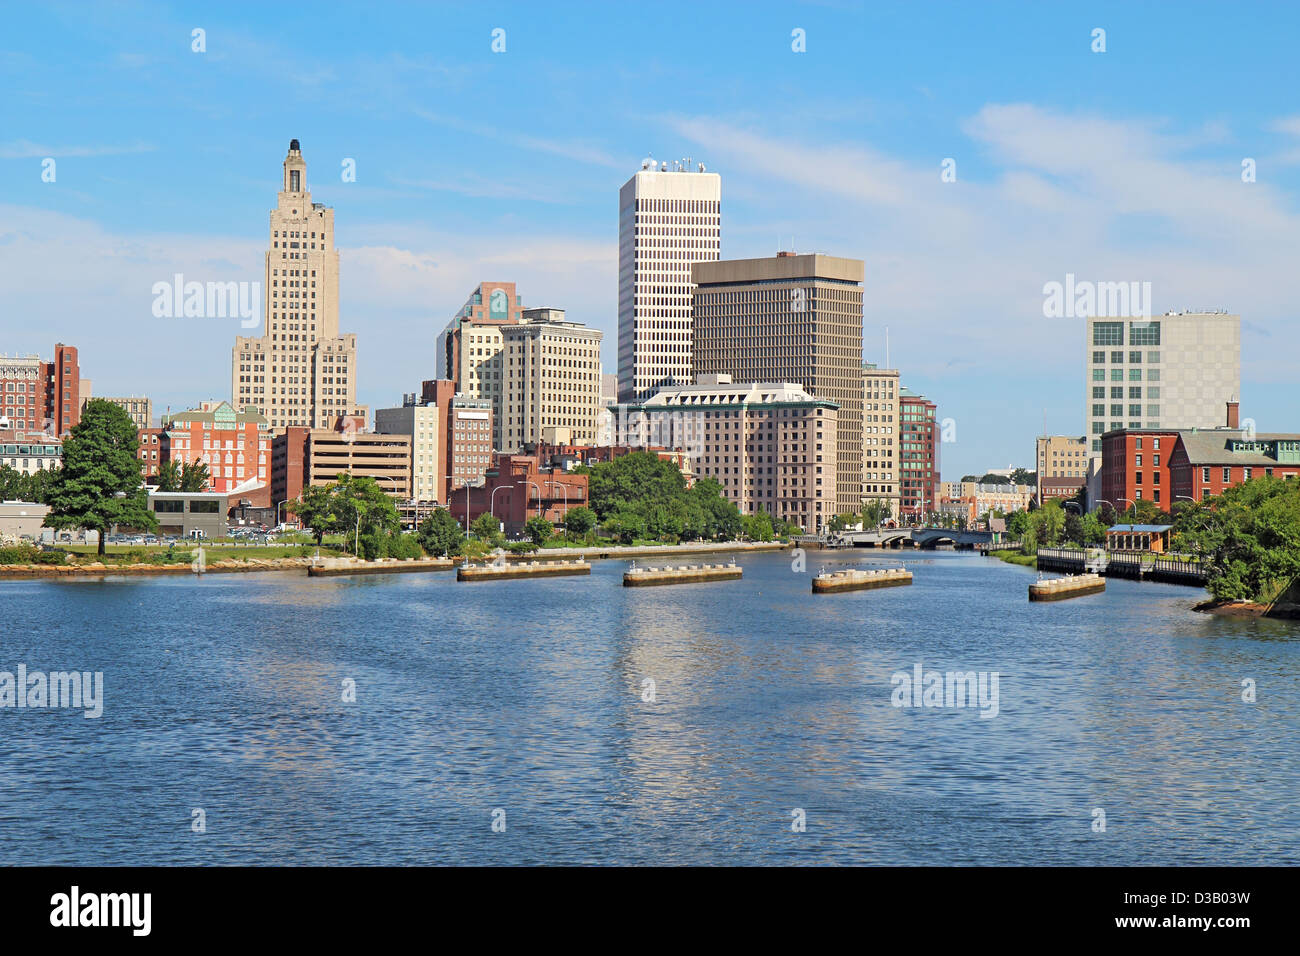 Blick auf die Skyline von Providence, Rhode Island, von der anderen Seite des Flusses "Providence" gegen einen blauen Himmel und weiße Wolken Stockfoto